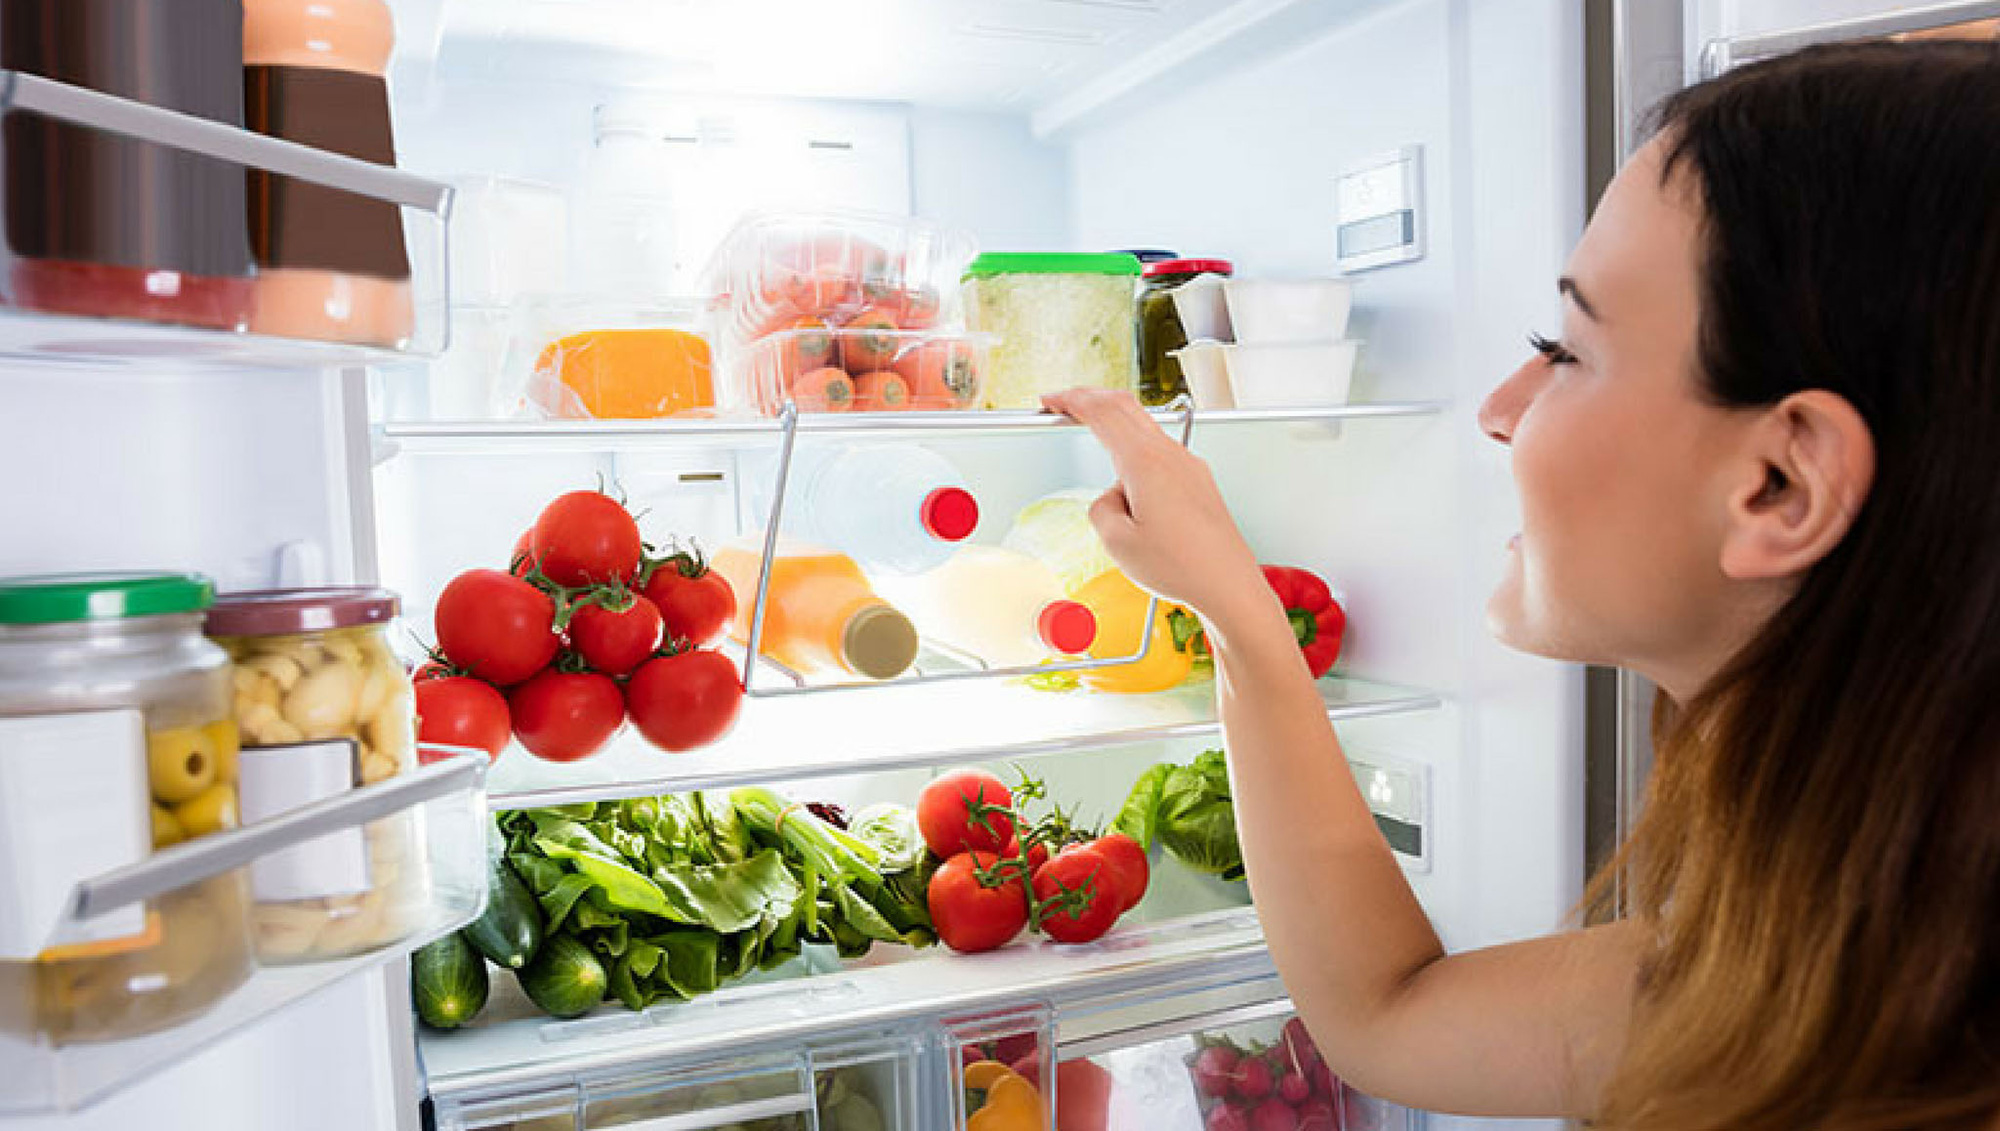 Hướng dẫn bảo quản thực phẩm sống và chín trong tủ lạnh - Bếp nhà chuẩn Âu. Trọn tình bền lâu